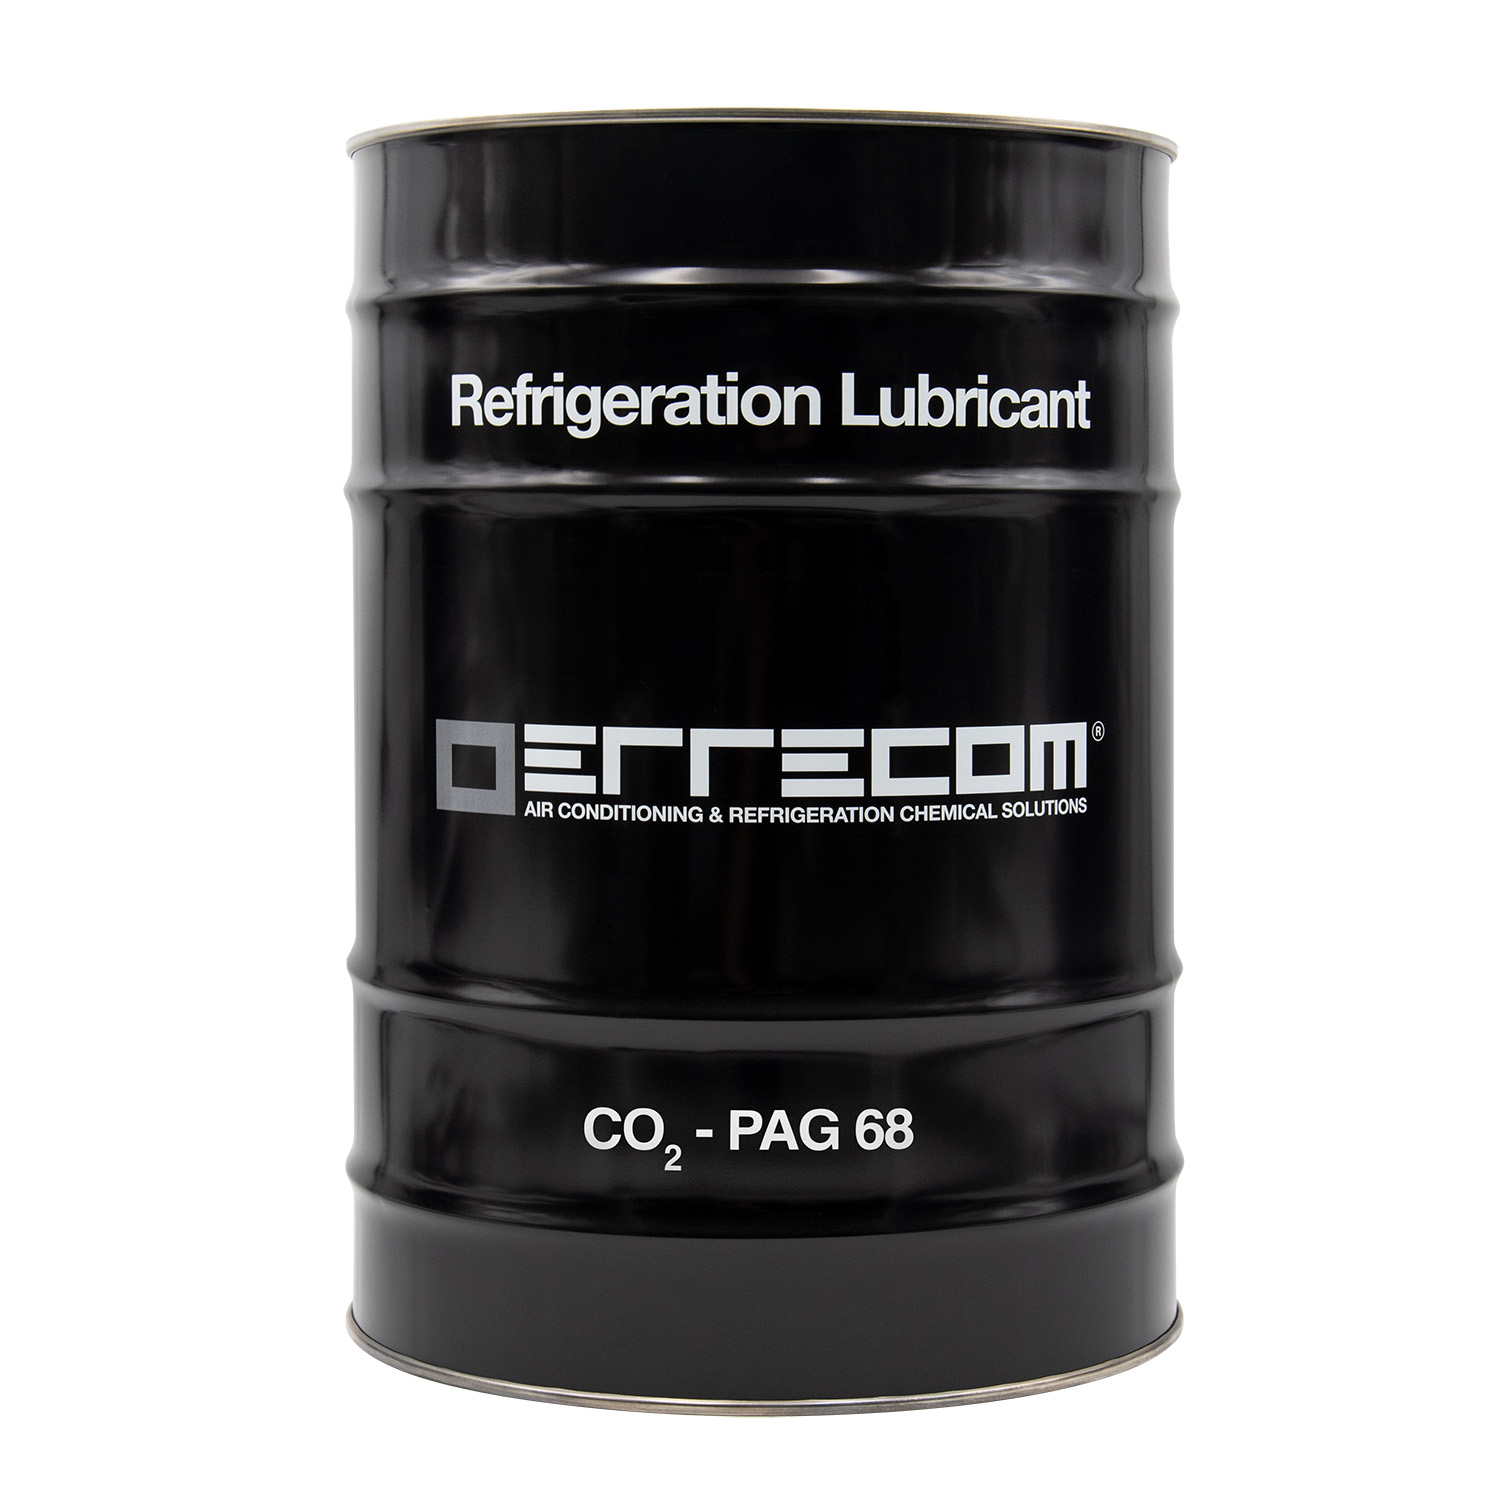 Olio lubrificante Refrigerazione (PAG68) specifico per CO2 viscosità 68 - Tanica in Metallo da 25 litri - Confezione n° 1 pz.